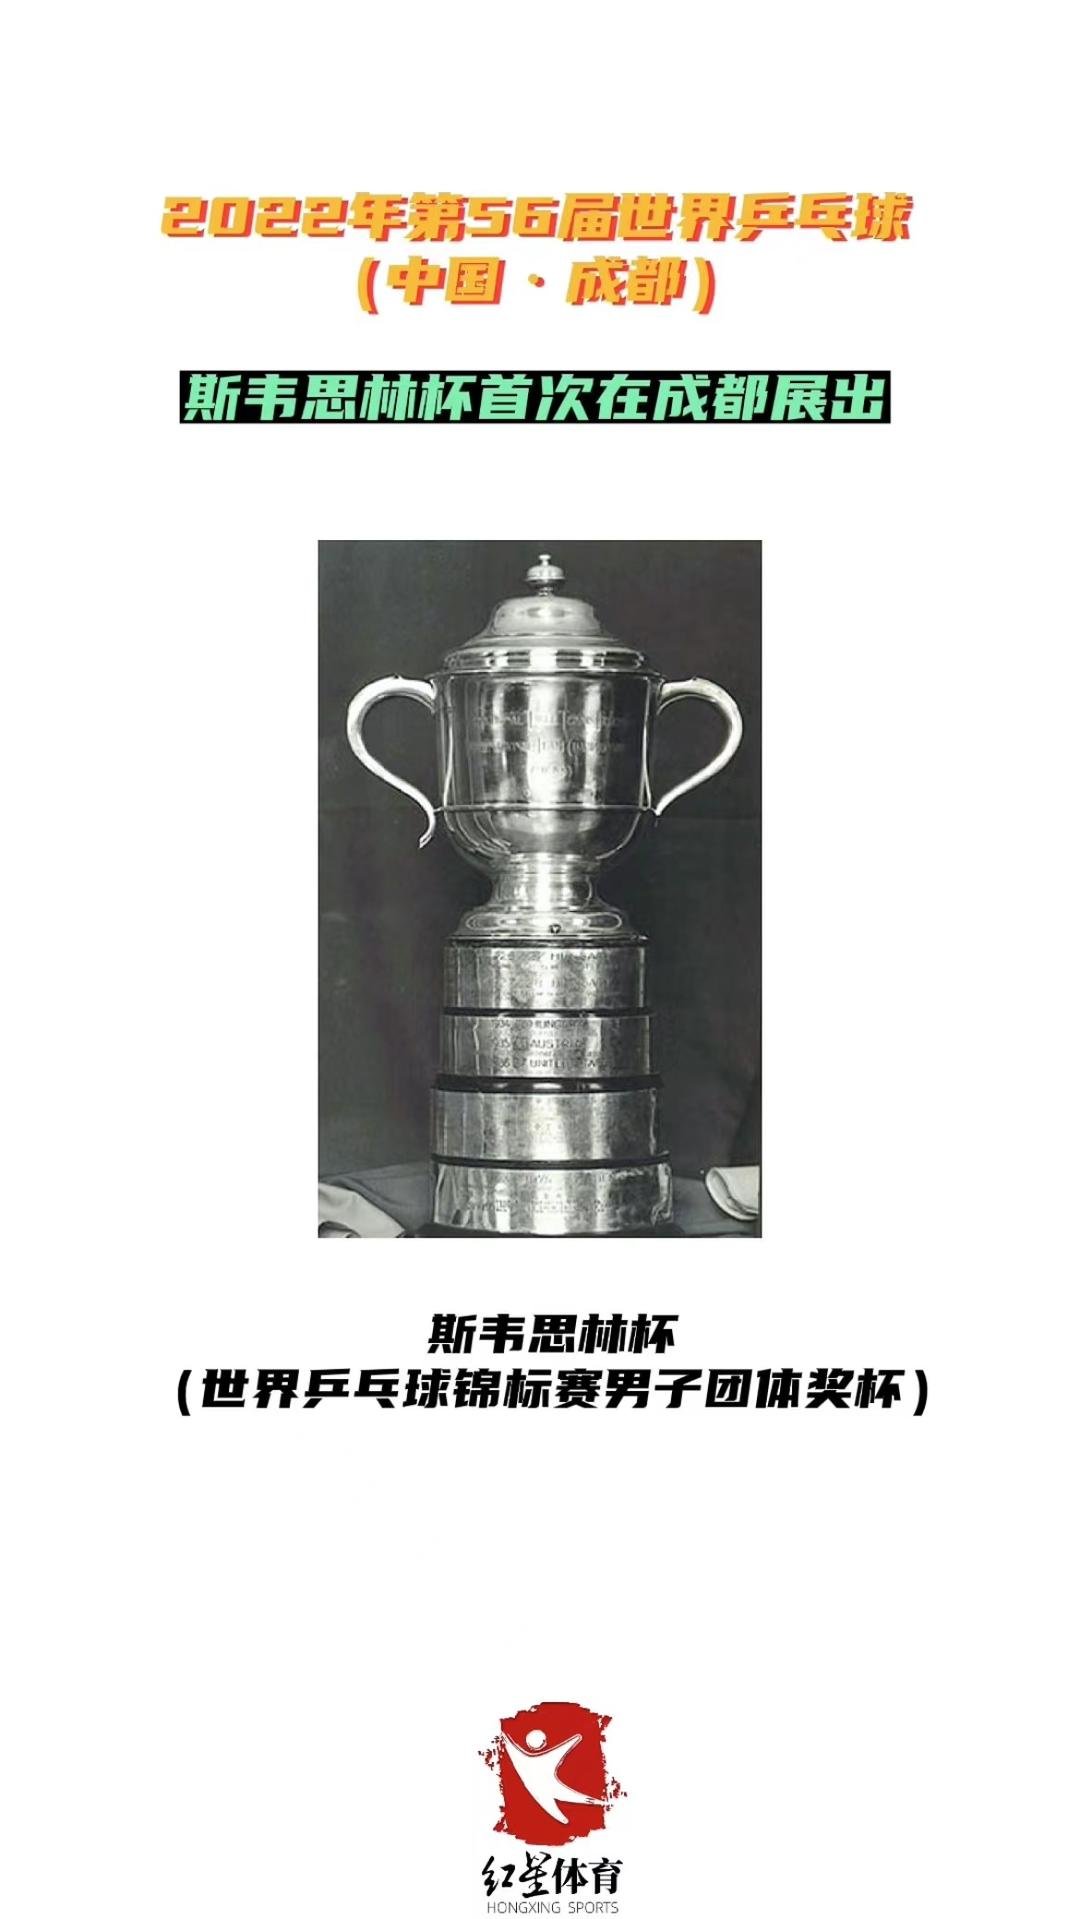 中国历届世乒赛男子团体冠军一览 斯韦思林杯首次在成都展出